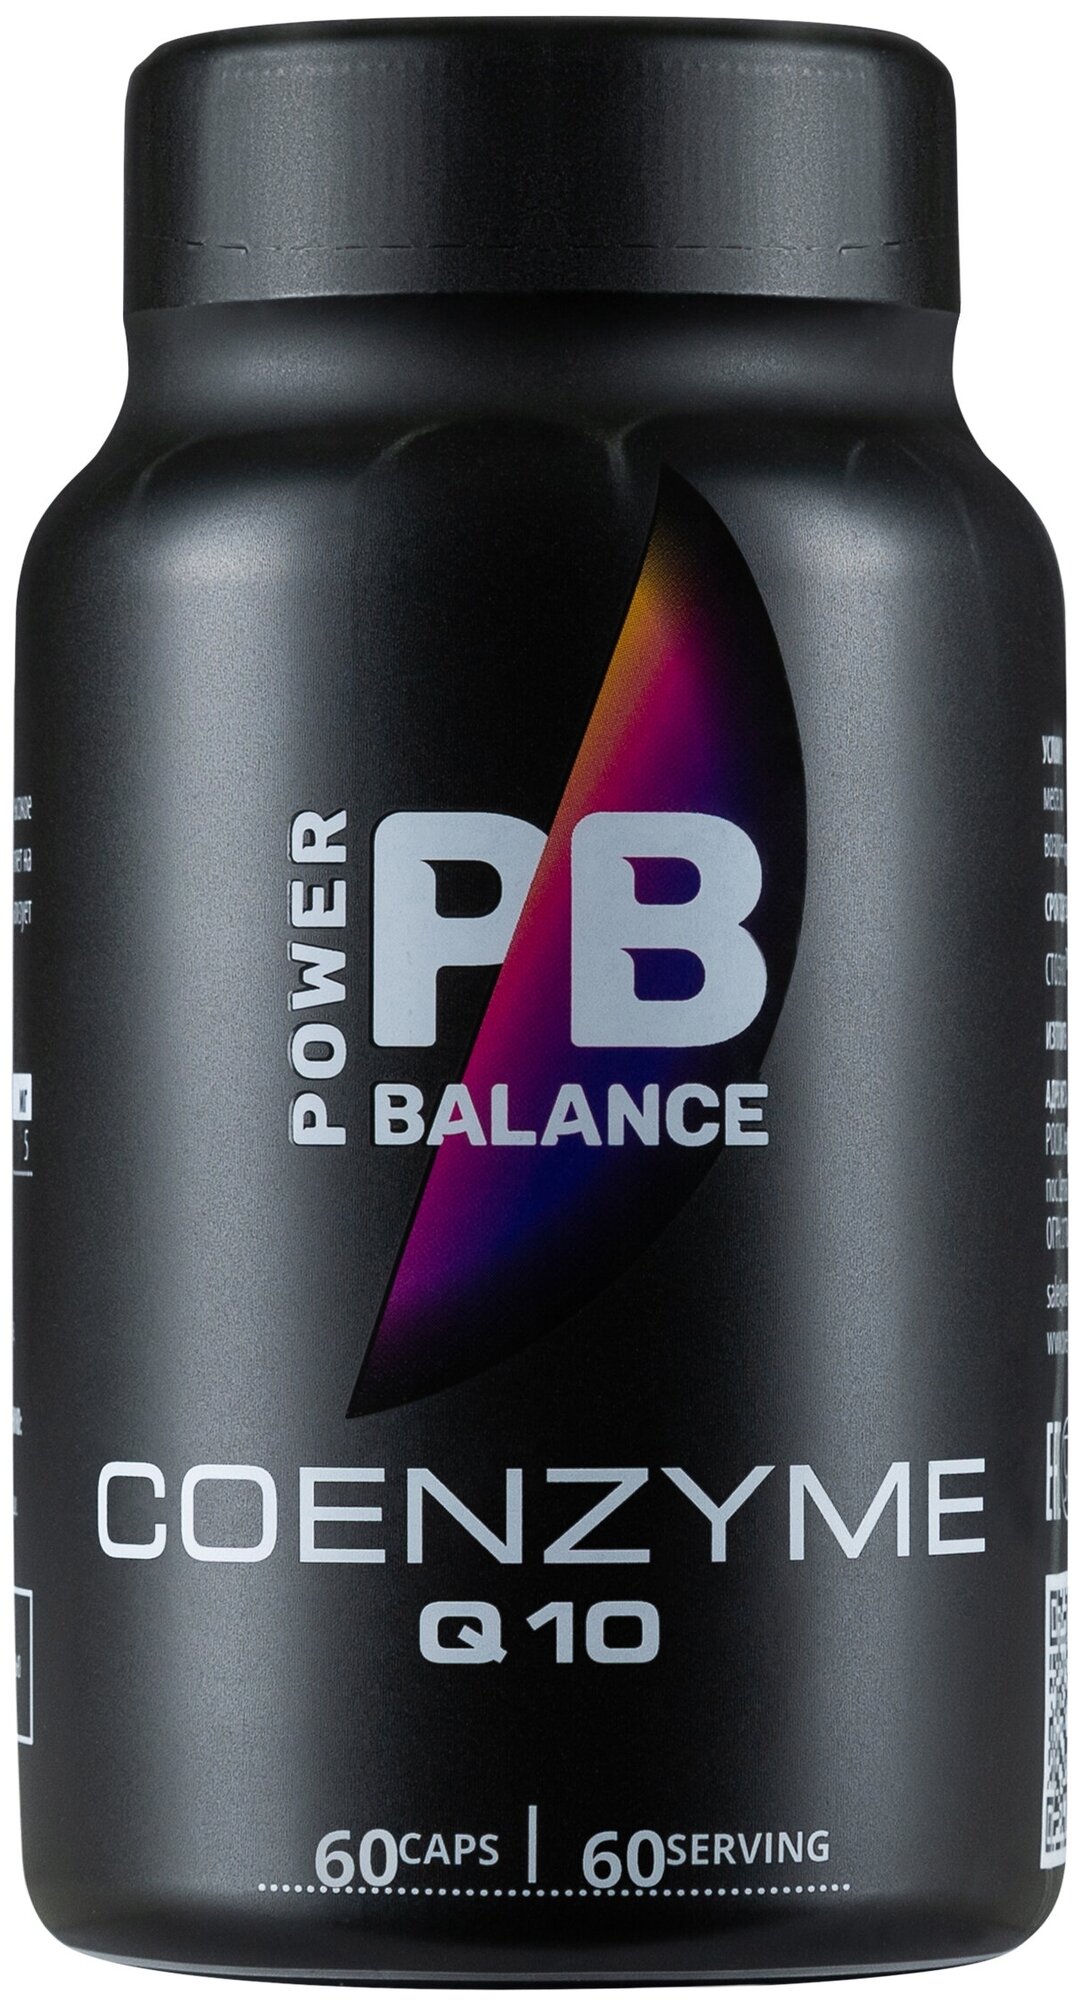 Коэнзим Q10 Power Balance / антиоксидант / для сосудов / для сердца  очищение организма / Coenzyme Q10 / 60 капсул